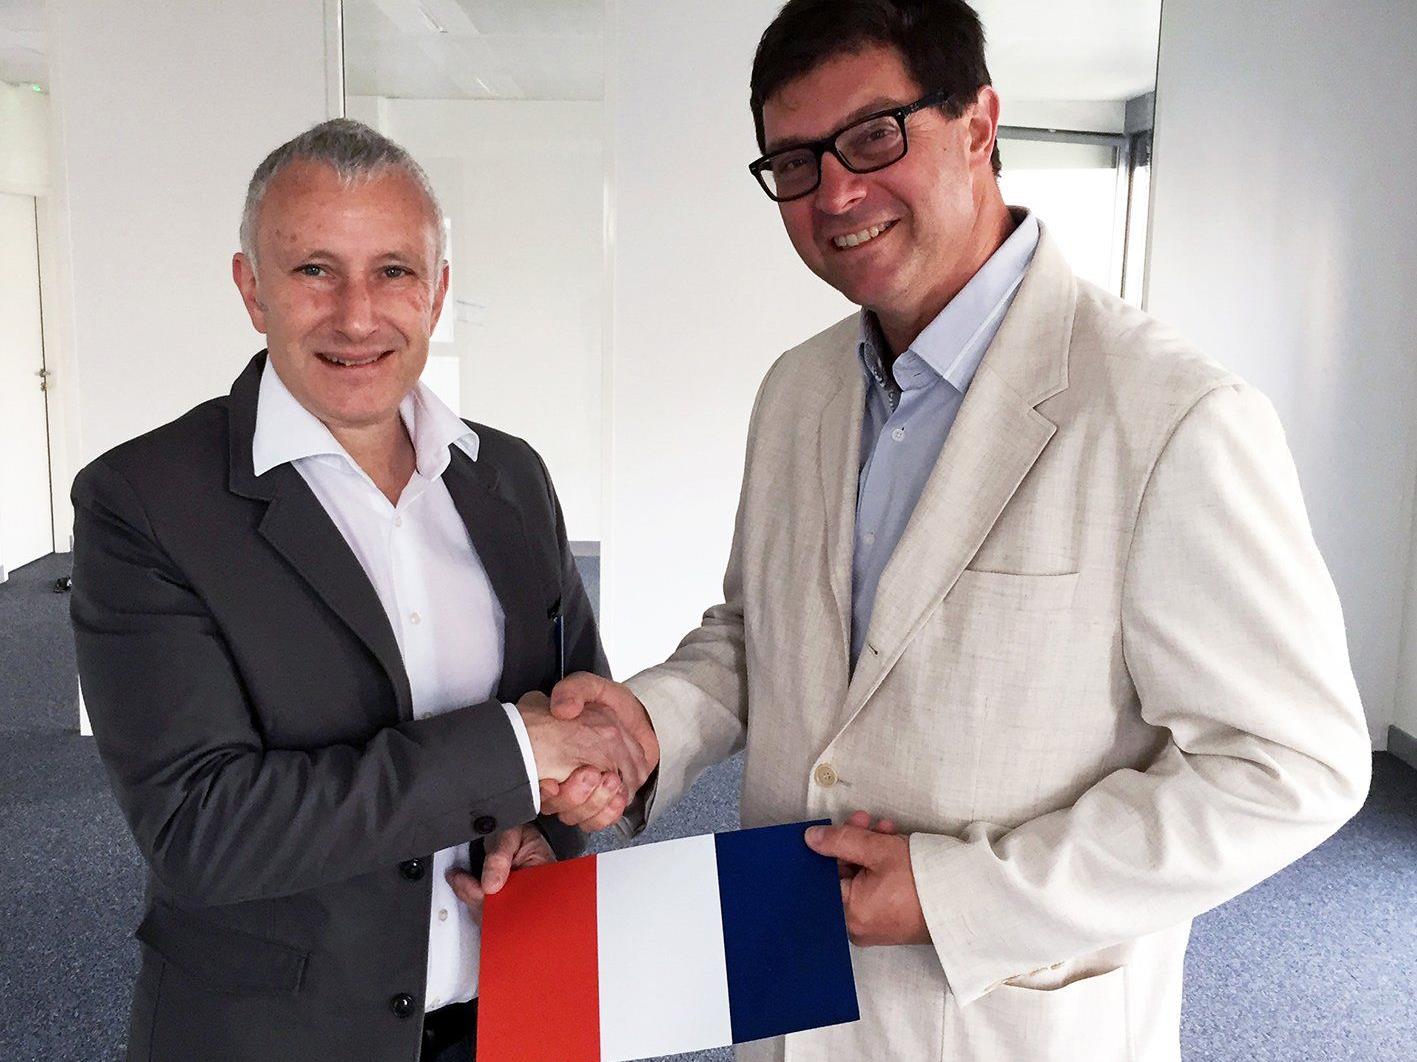 Jürgen Rainalter, CEO von Getzner Werkstoffe (links) und Frédéric Caffin, Geschäftsführer von Getzner Frankreich, setzen in Frankreich gemeinsam Maßnahmen gegen Vibrationen und Lärm.